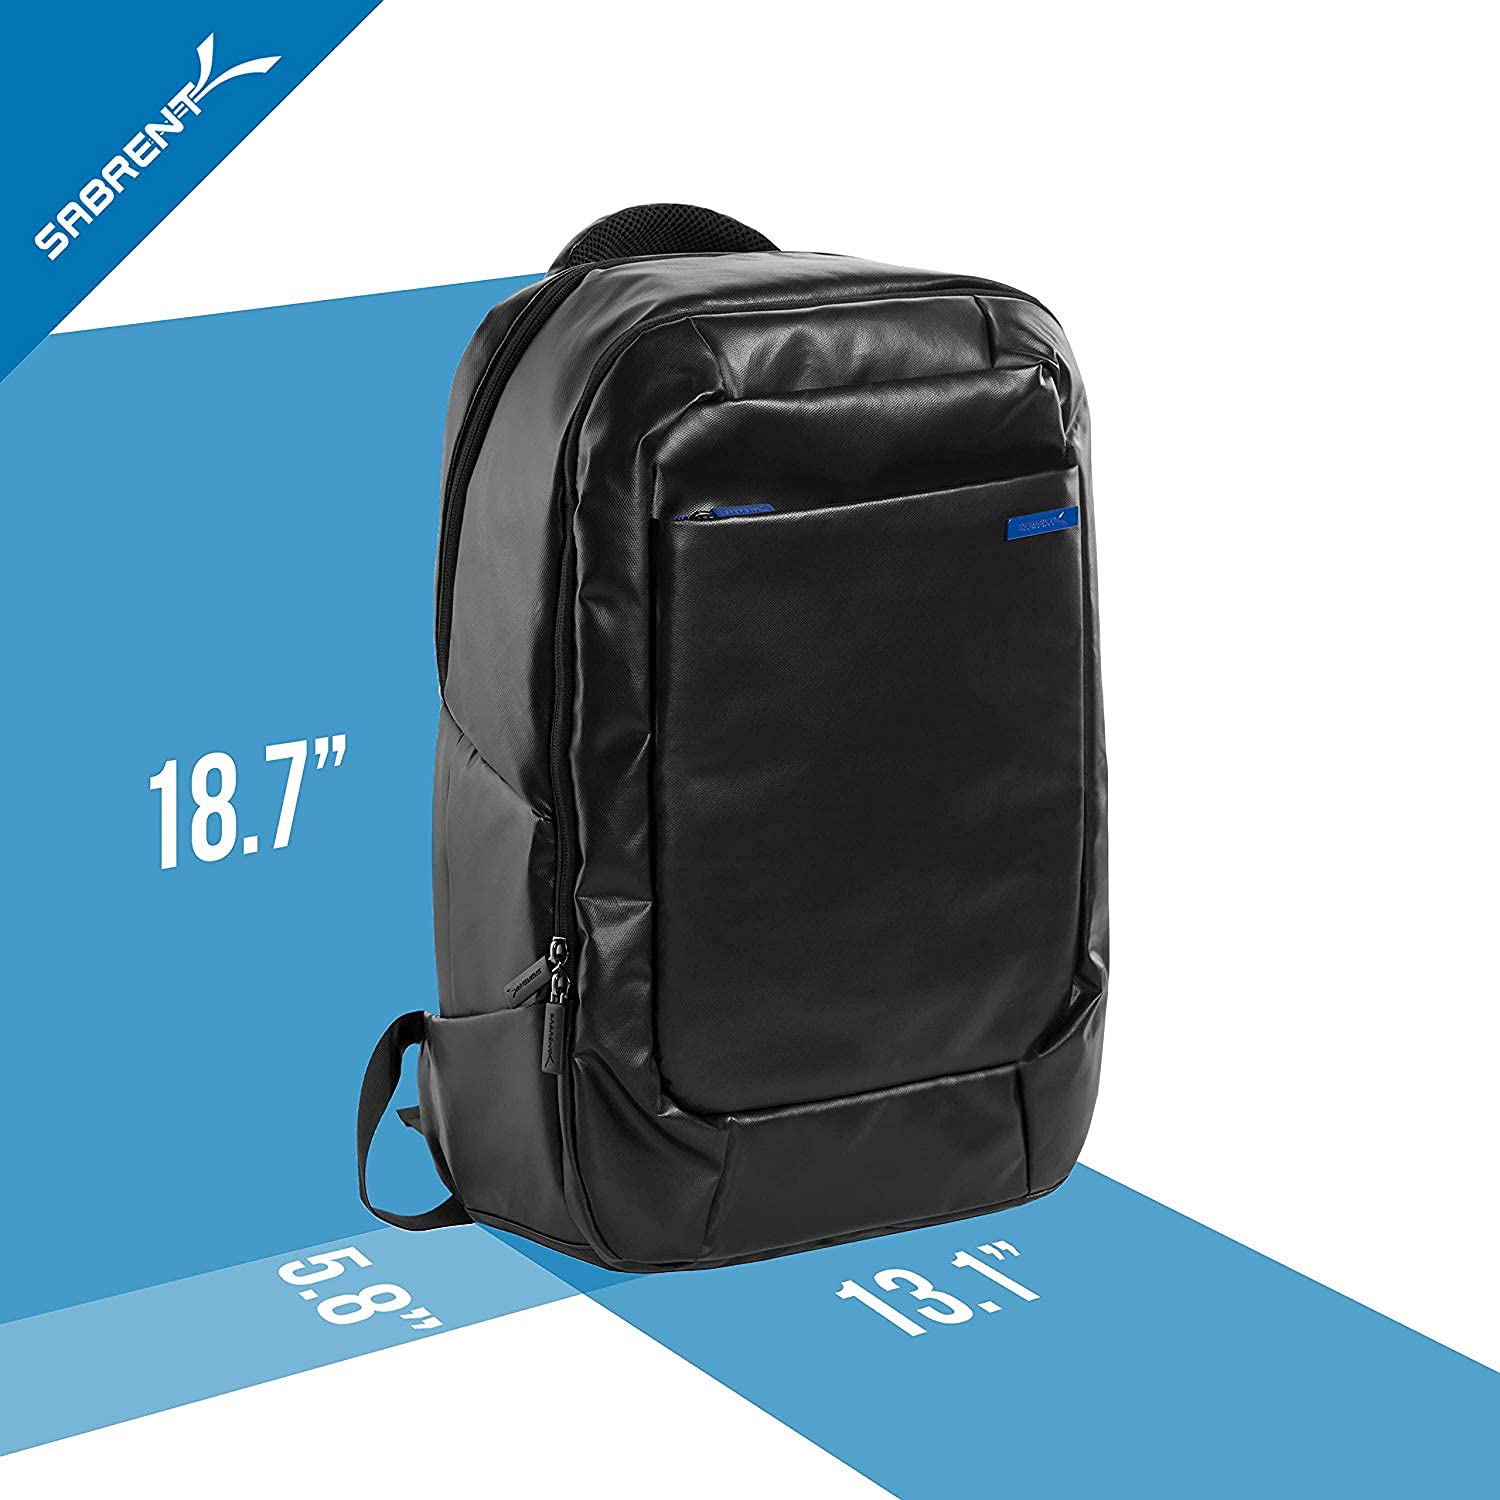 Sabrent Weather Resistant Backpack (BG-BPKP)